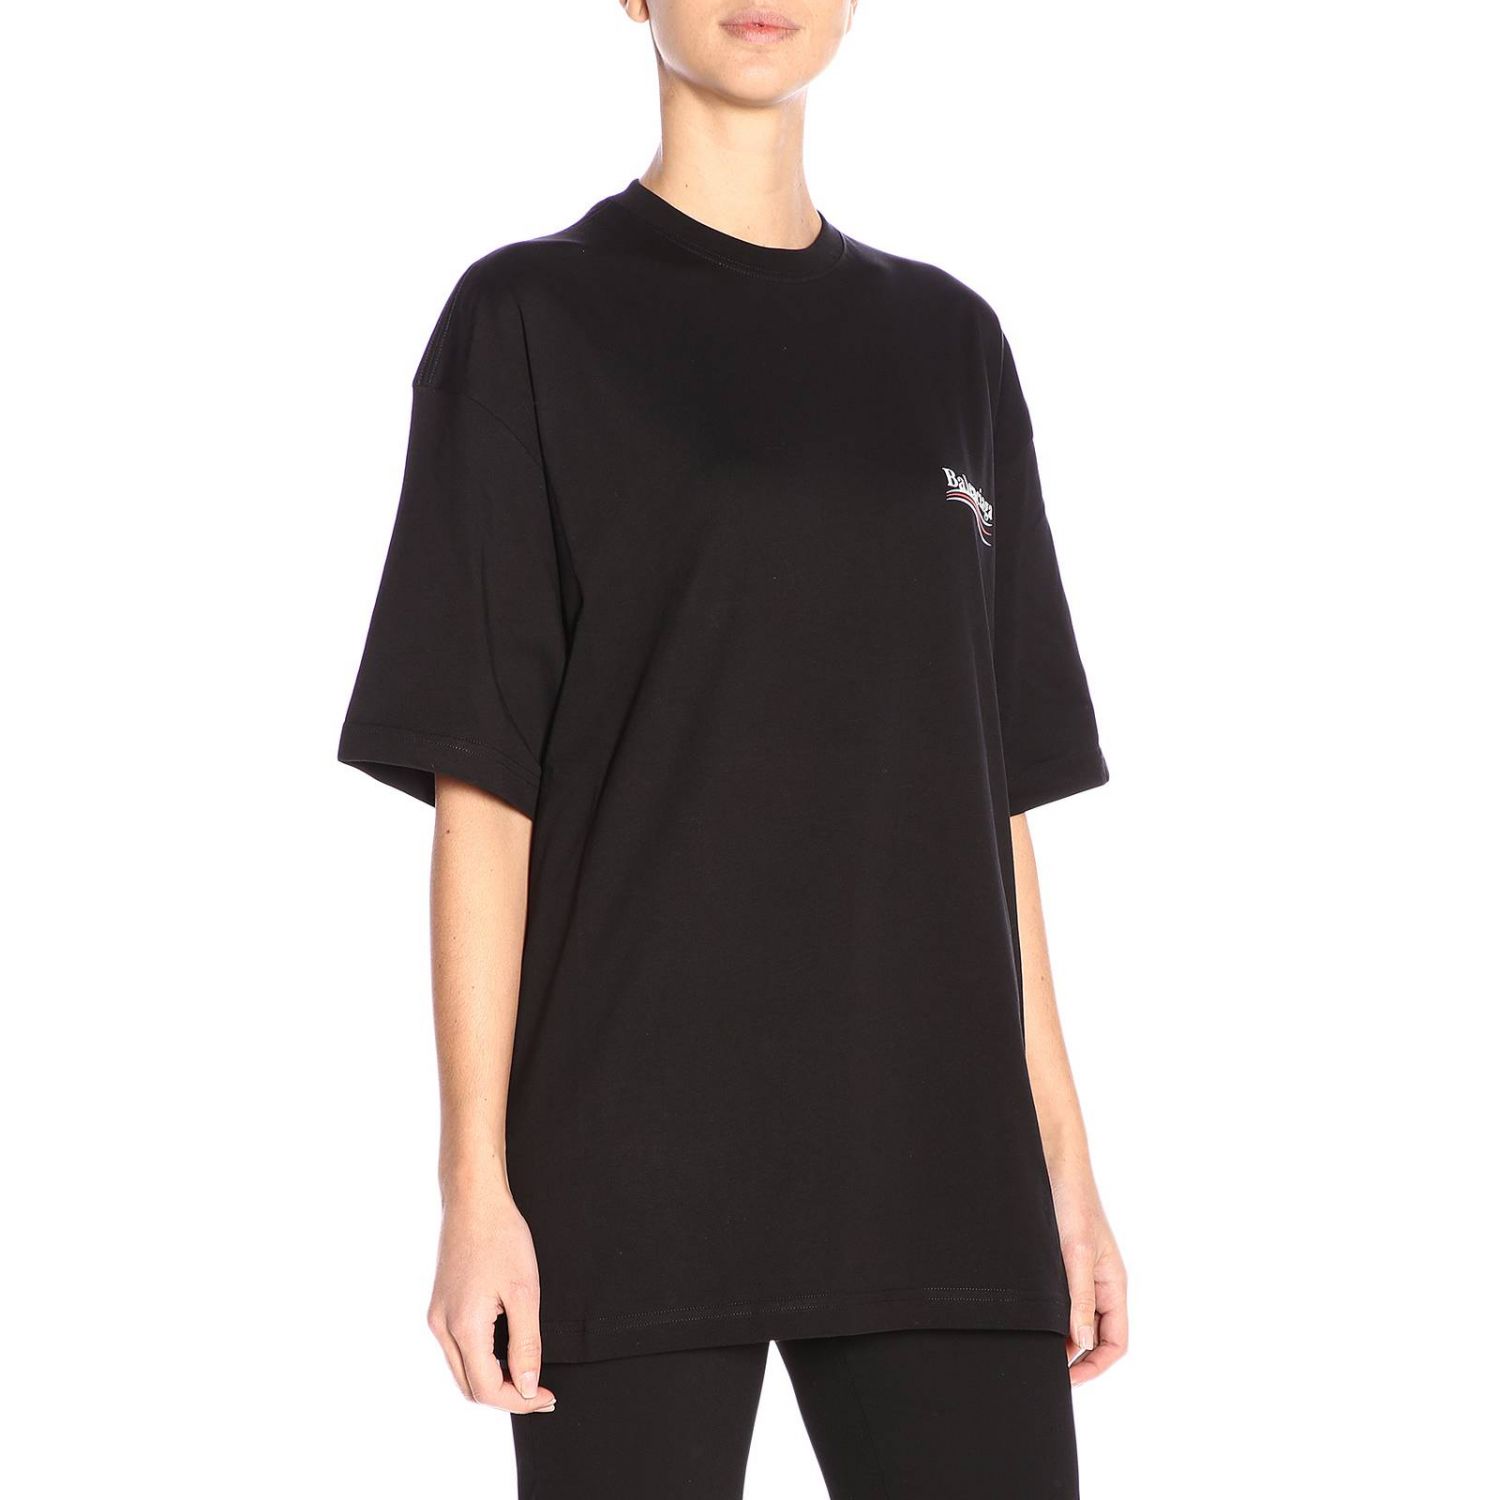 Balenciaga Outlet: t-shirt for women - Black | Balenciaga t-shirt ...